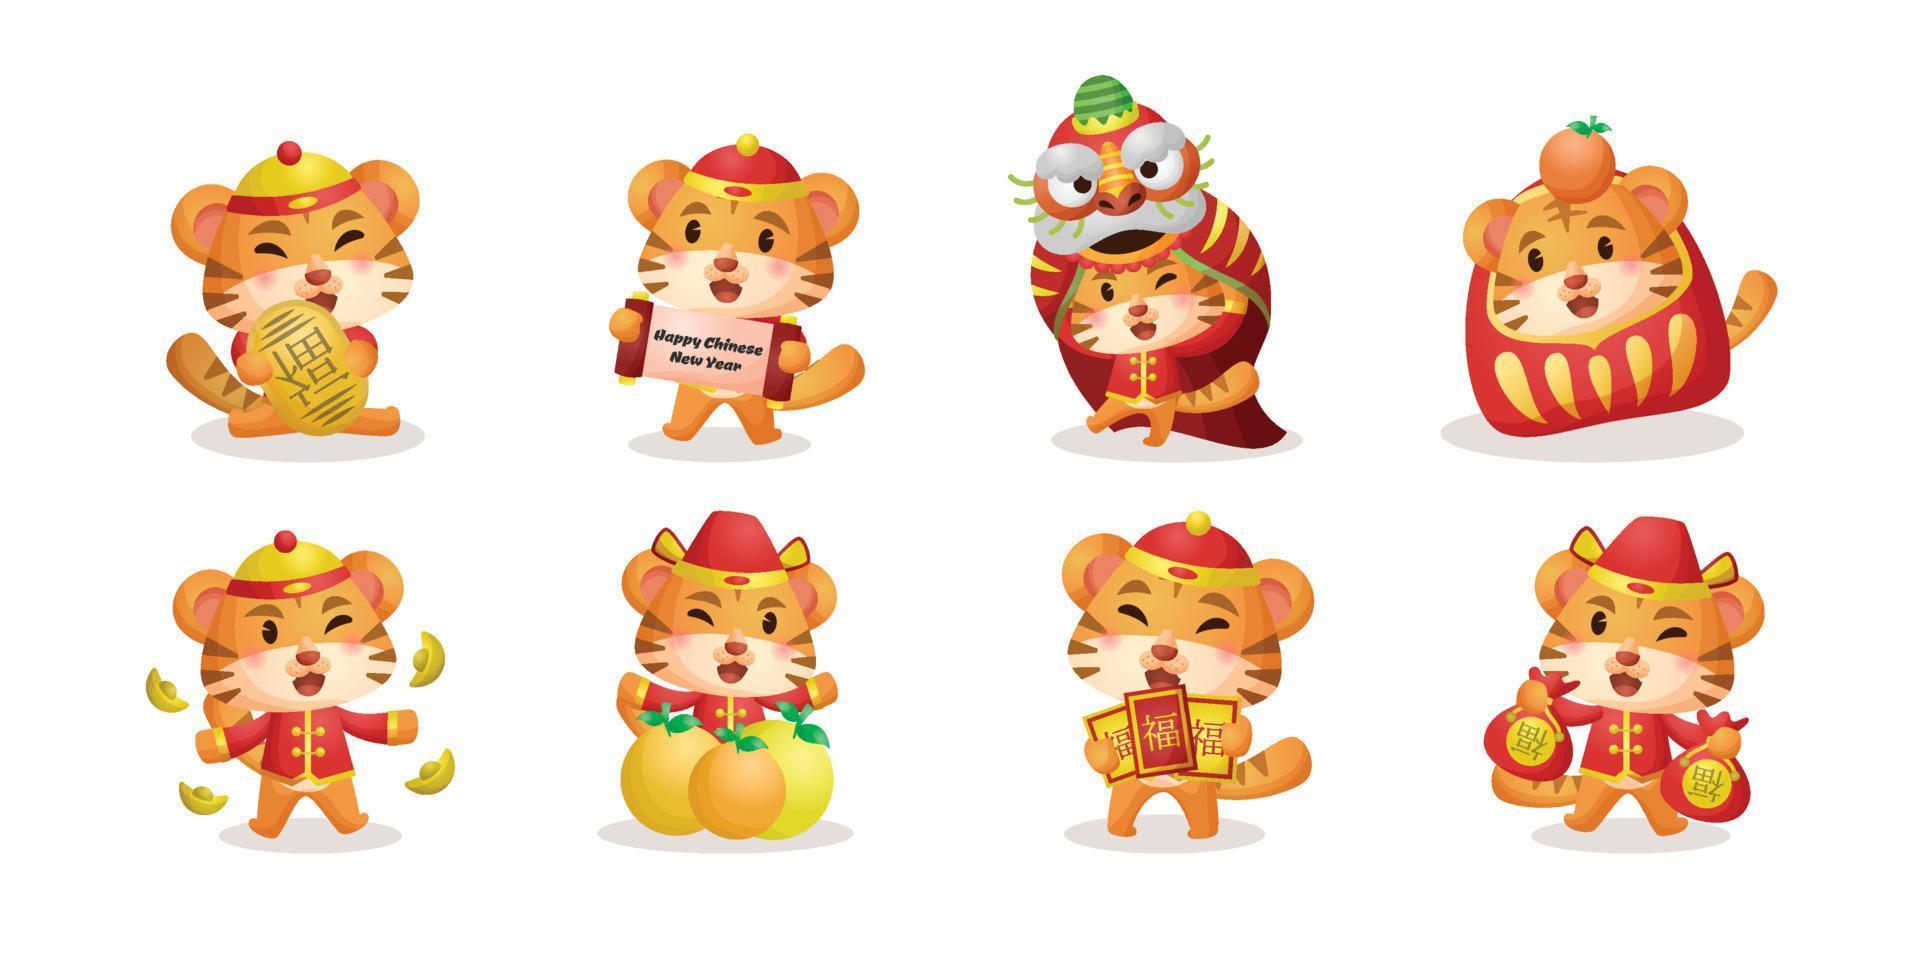 año nuevo chino de la celebración del zodiaco del tigre colección de personajes de dibujos animados lindos vector